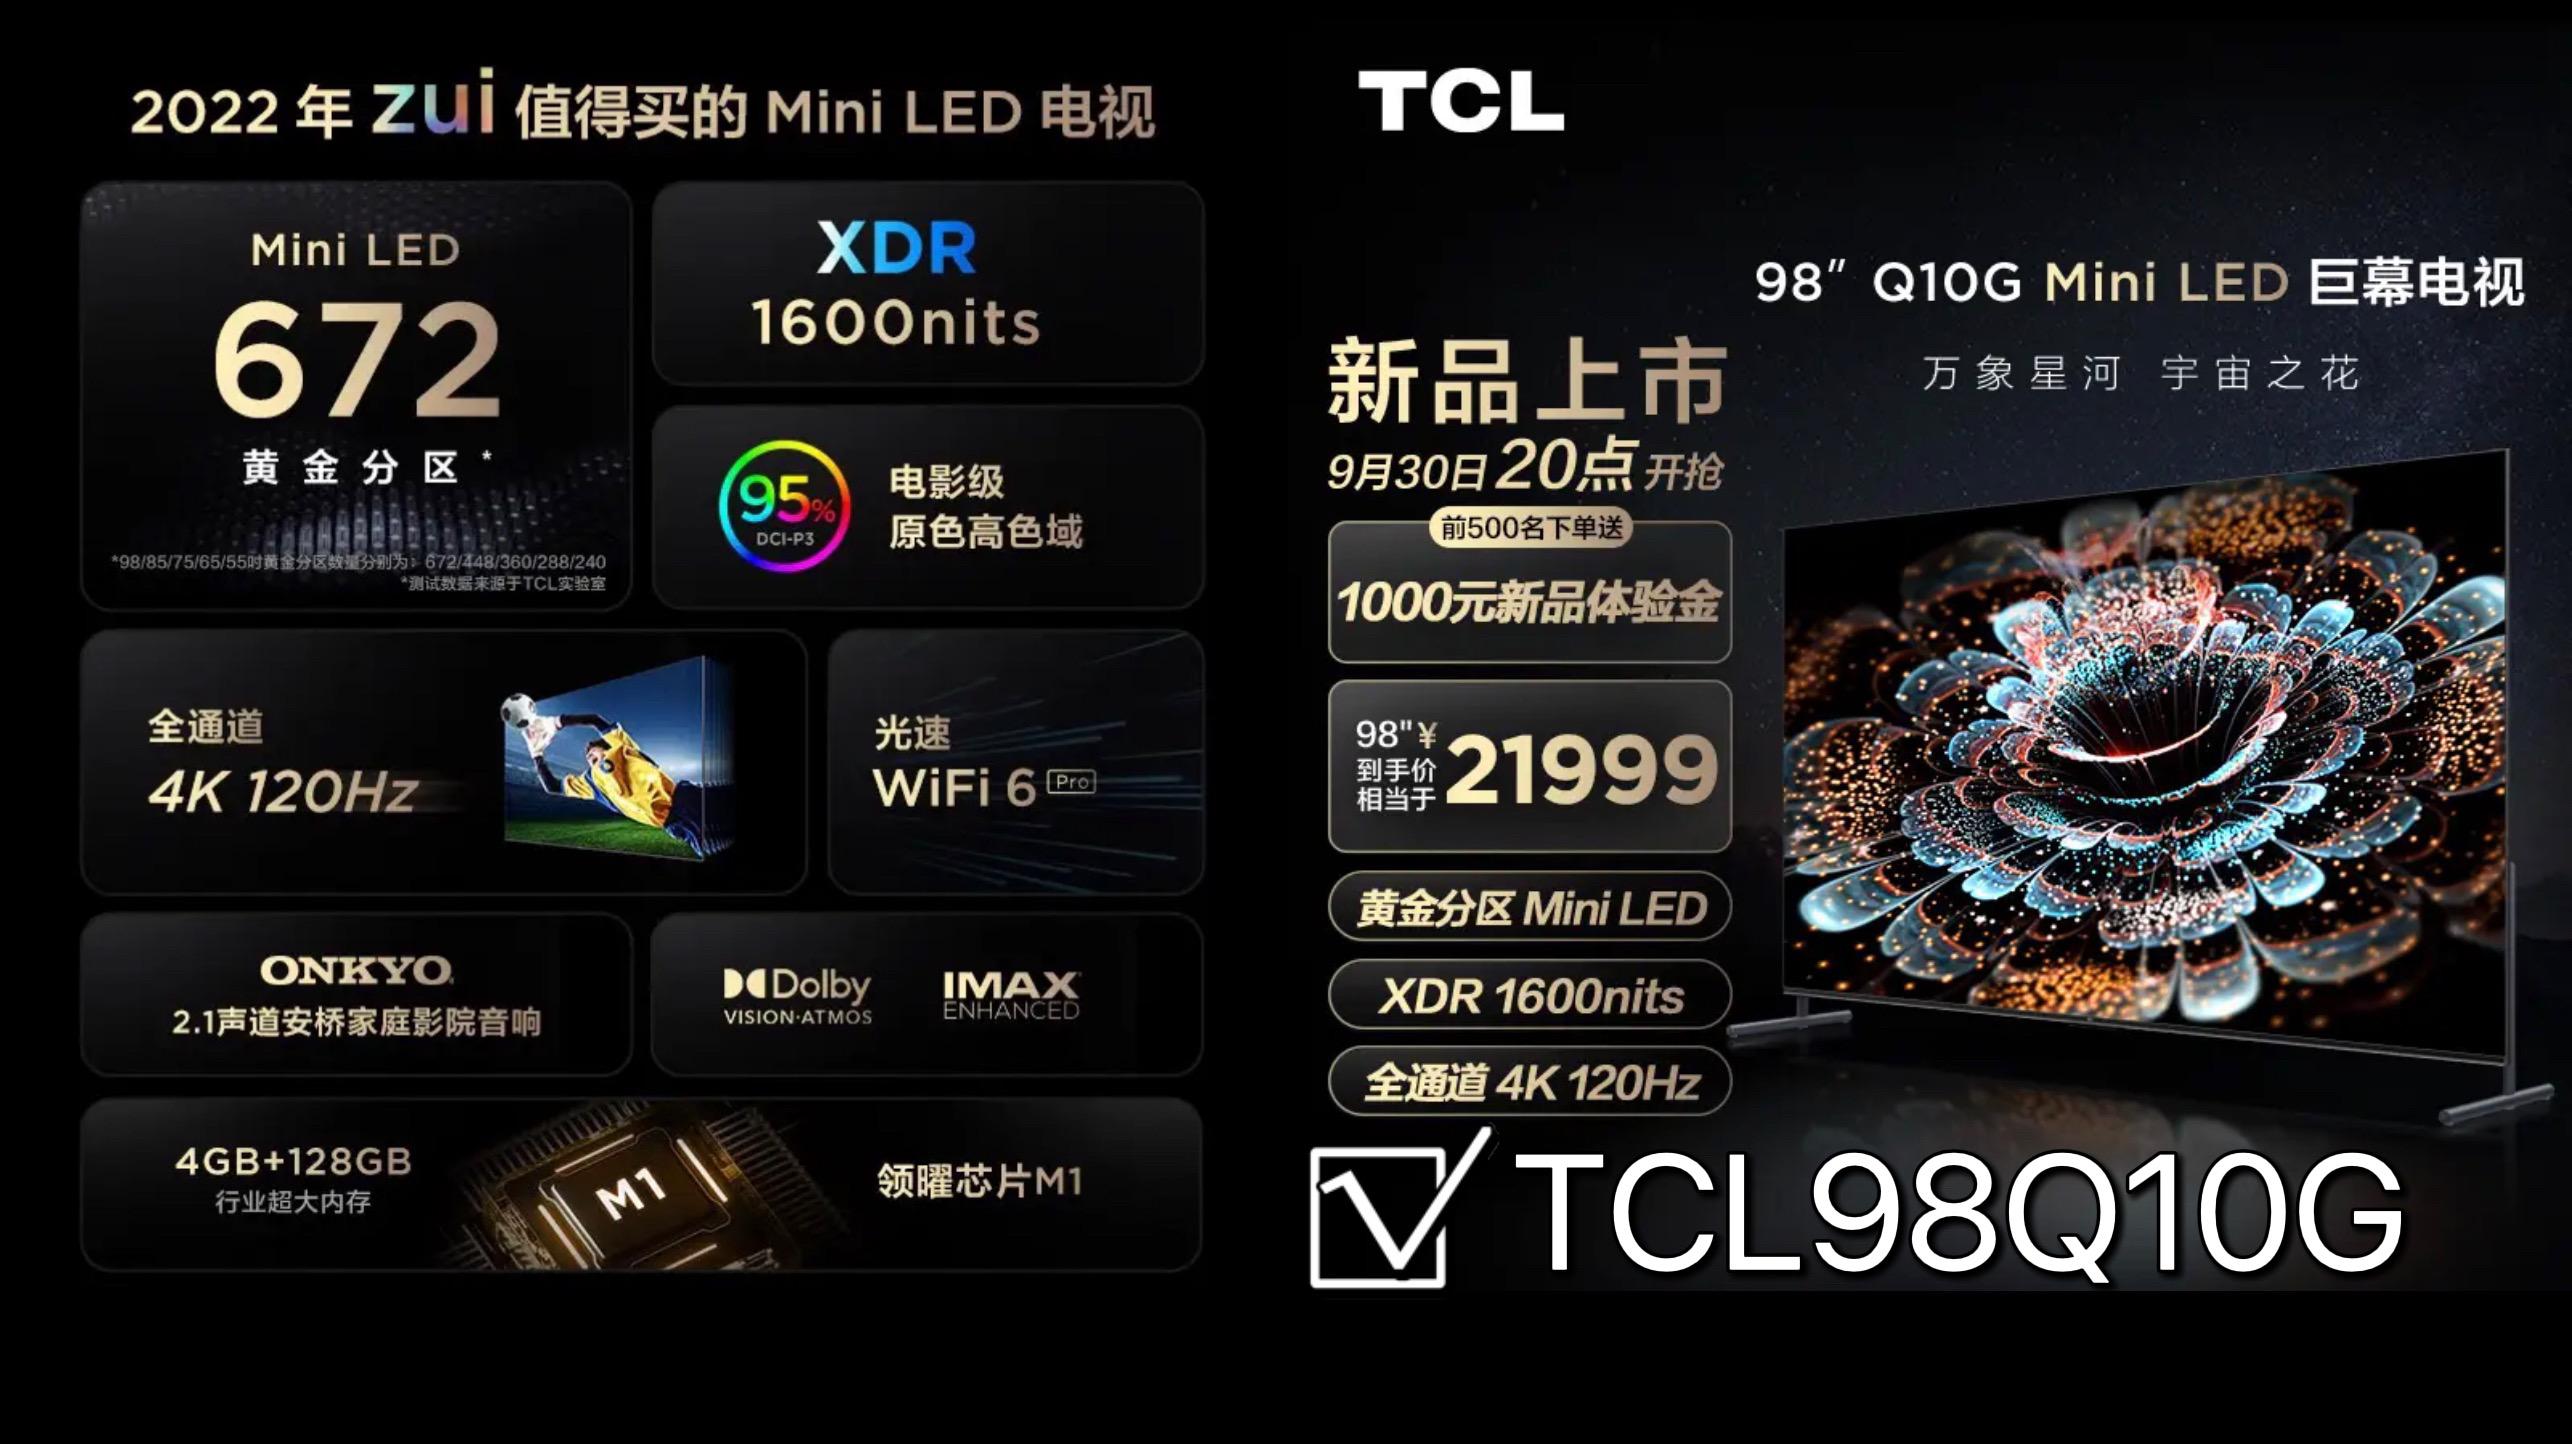 电视选购：98寸电视选TCL98T7E还是TCL98Q10G？差别大吗？